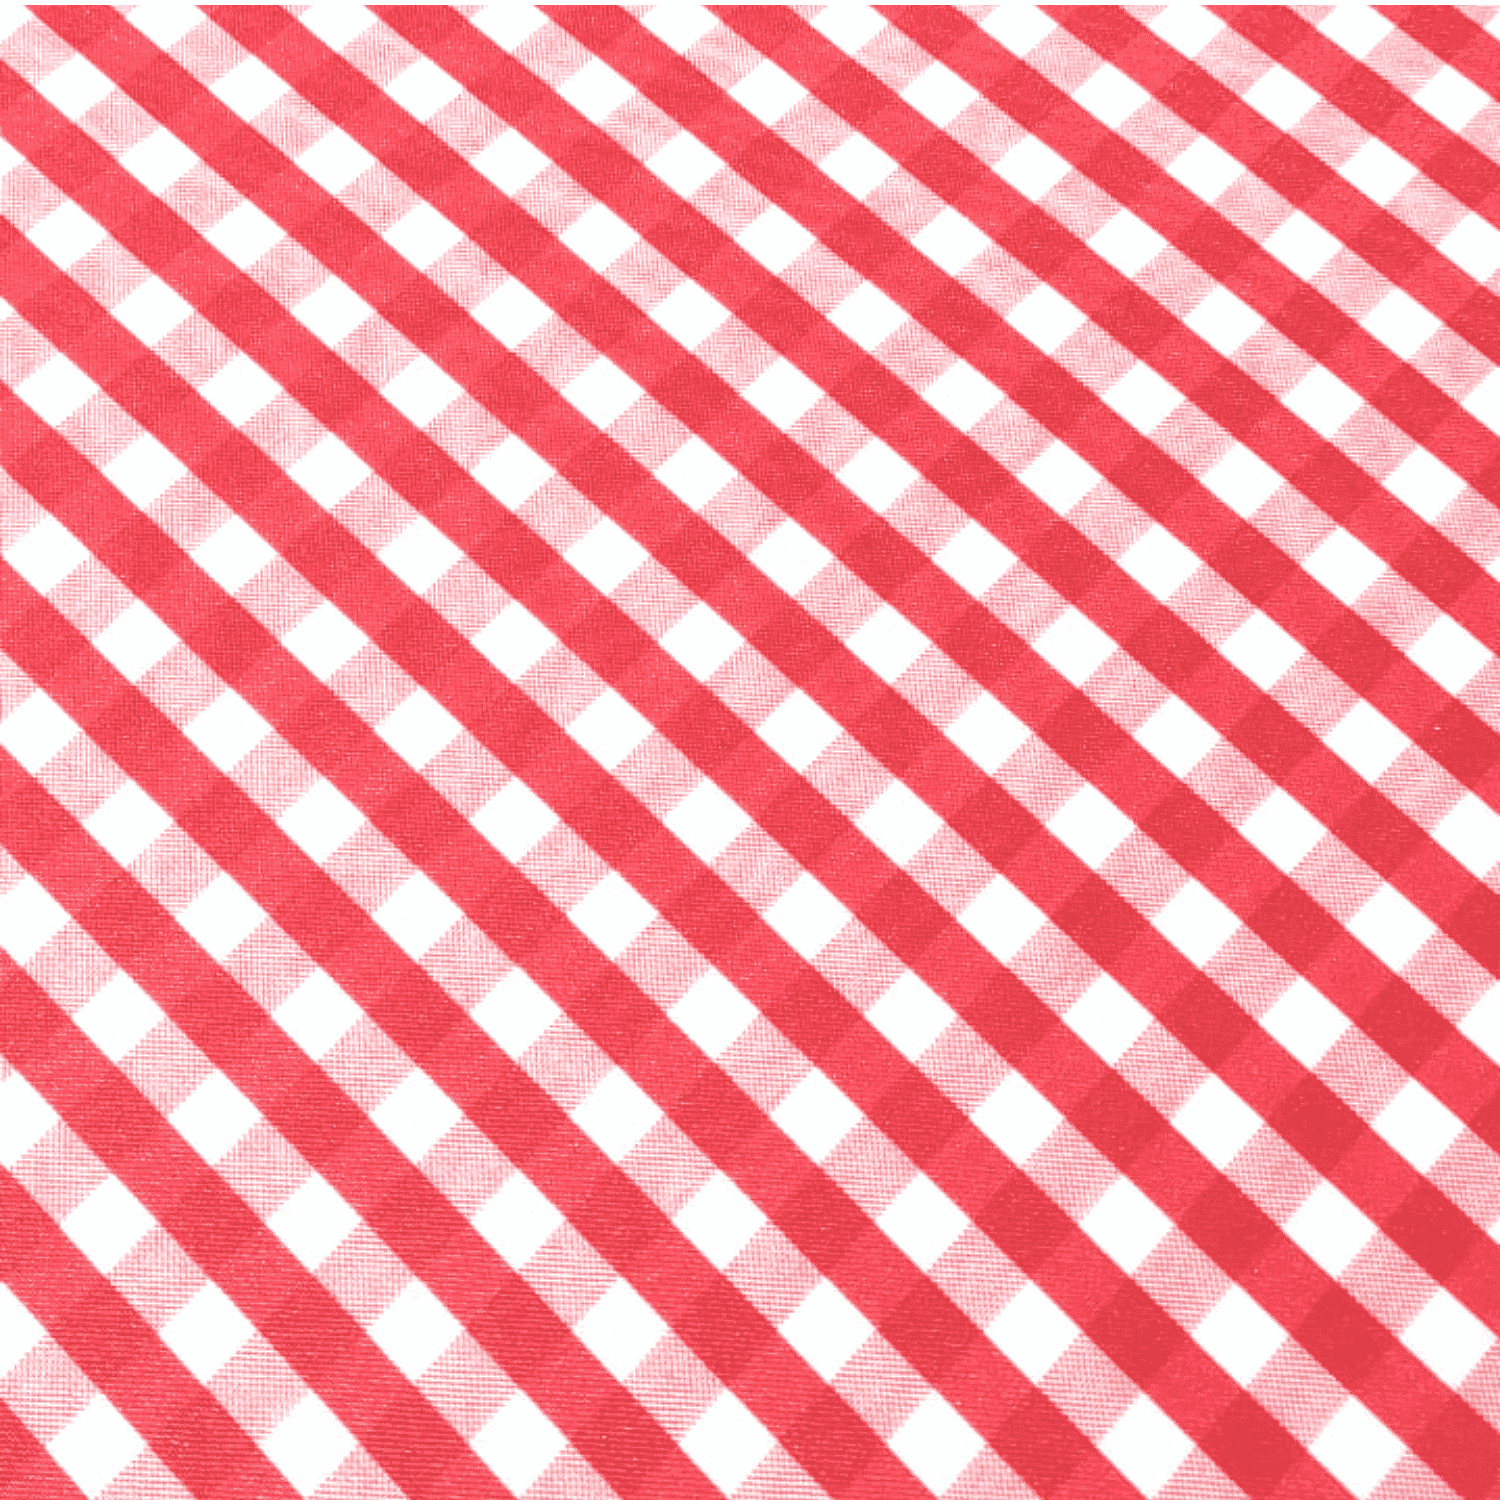 quadretto-rosso-austin-tovaglia-antimacchia-idrorepellente-quadratini-geometrico-bianco-rosso-dettaglio